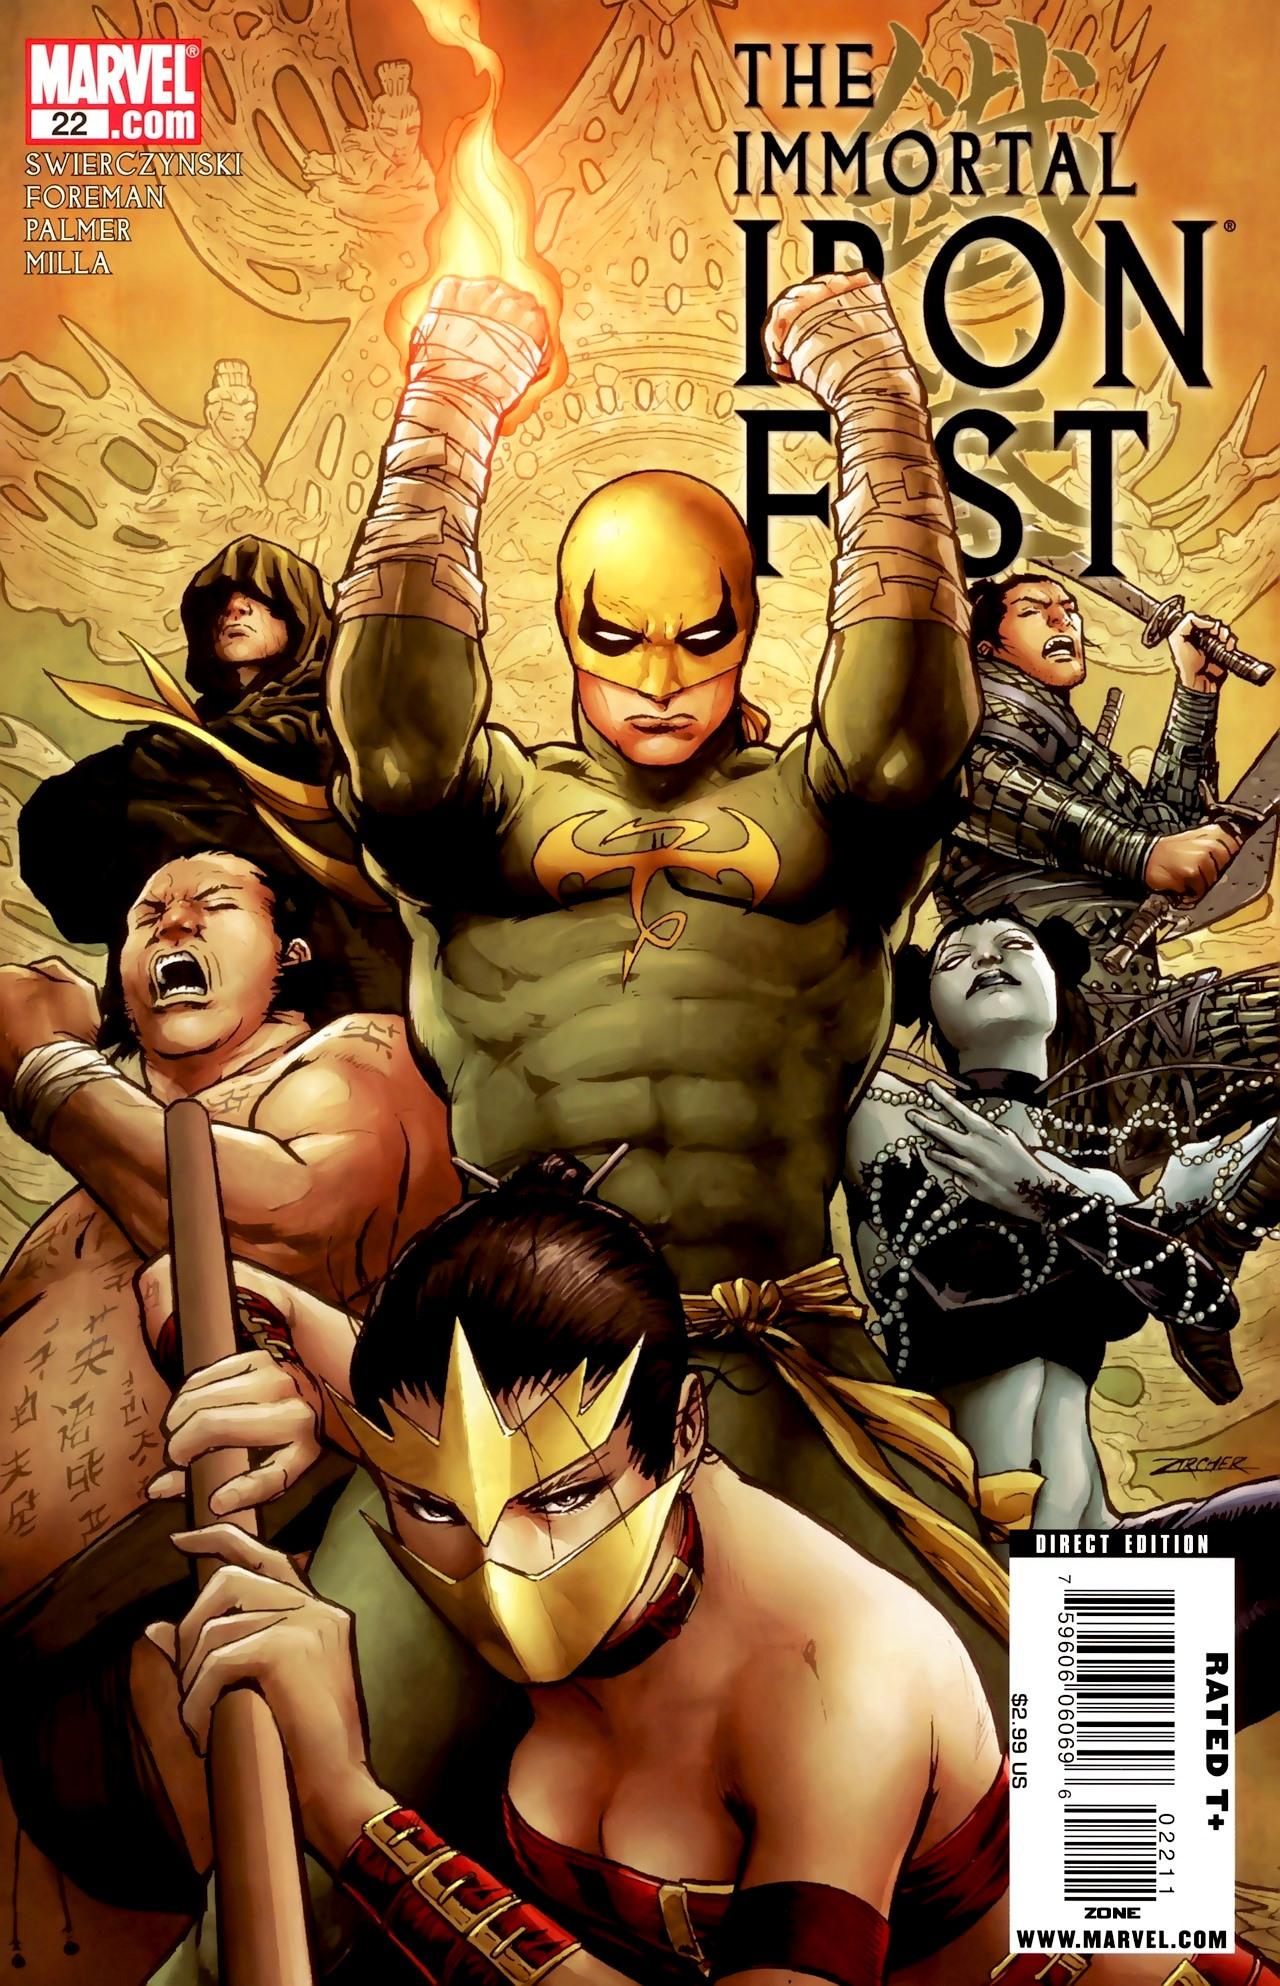 Immortal Iron Fist Vol. 1 #22